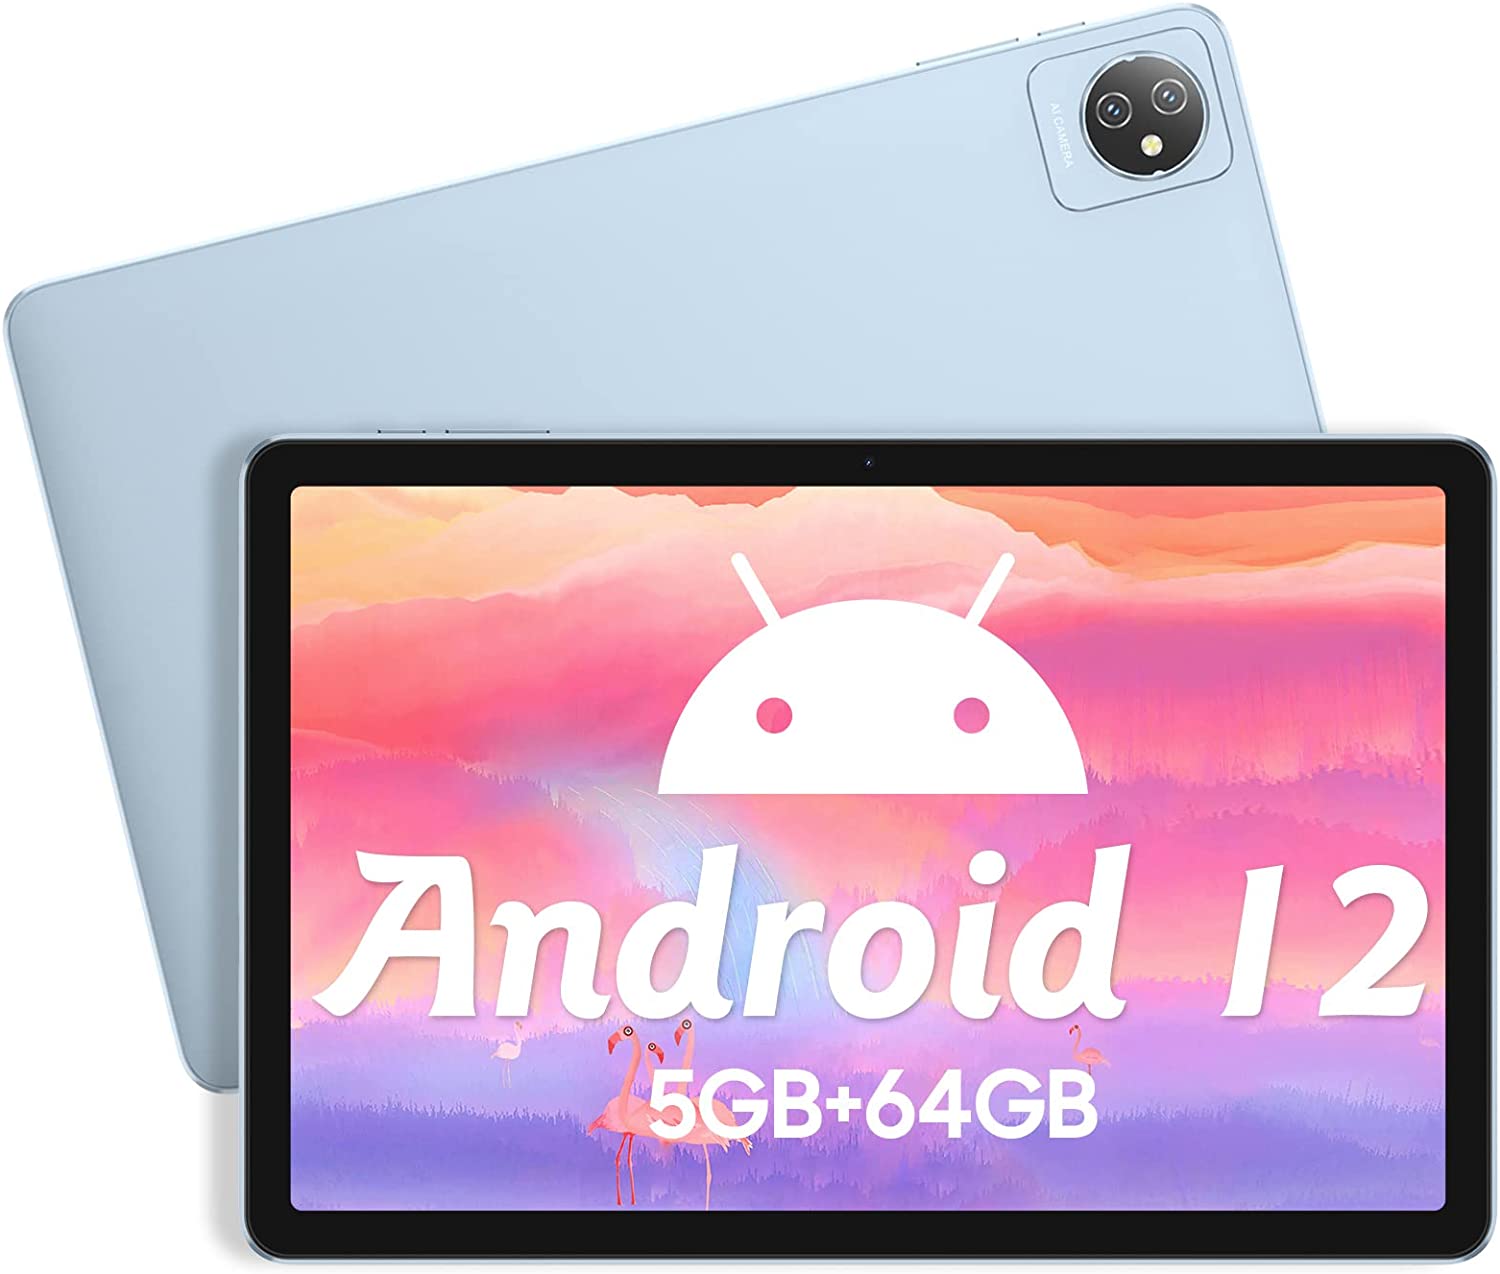 Android12 タブレット 10.1インチ wi-fiモデル 5GBRAM+64GBROM+1TB TF拡張 4コアCPU 6580mAh Google GMS認証 1280*800 IPS HD 画面 デュアルカメラ+Type-C+Bluetooth+OTG 子供にも適当贈り物/子供用タブレットPC